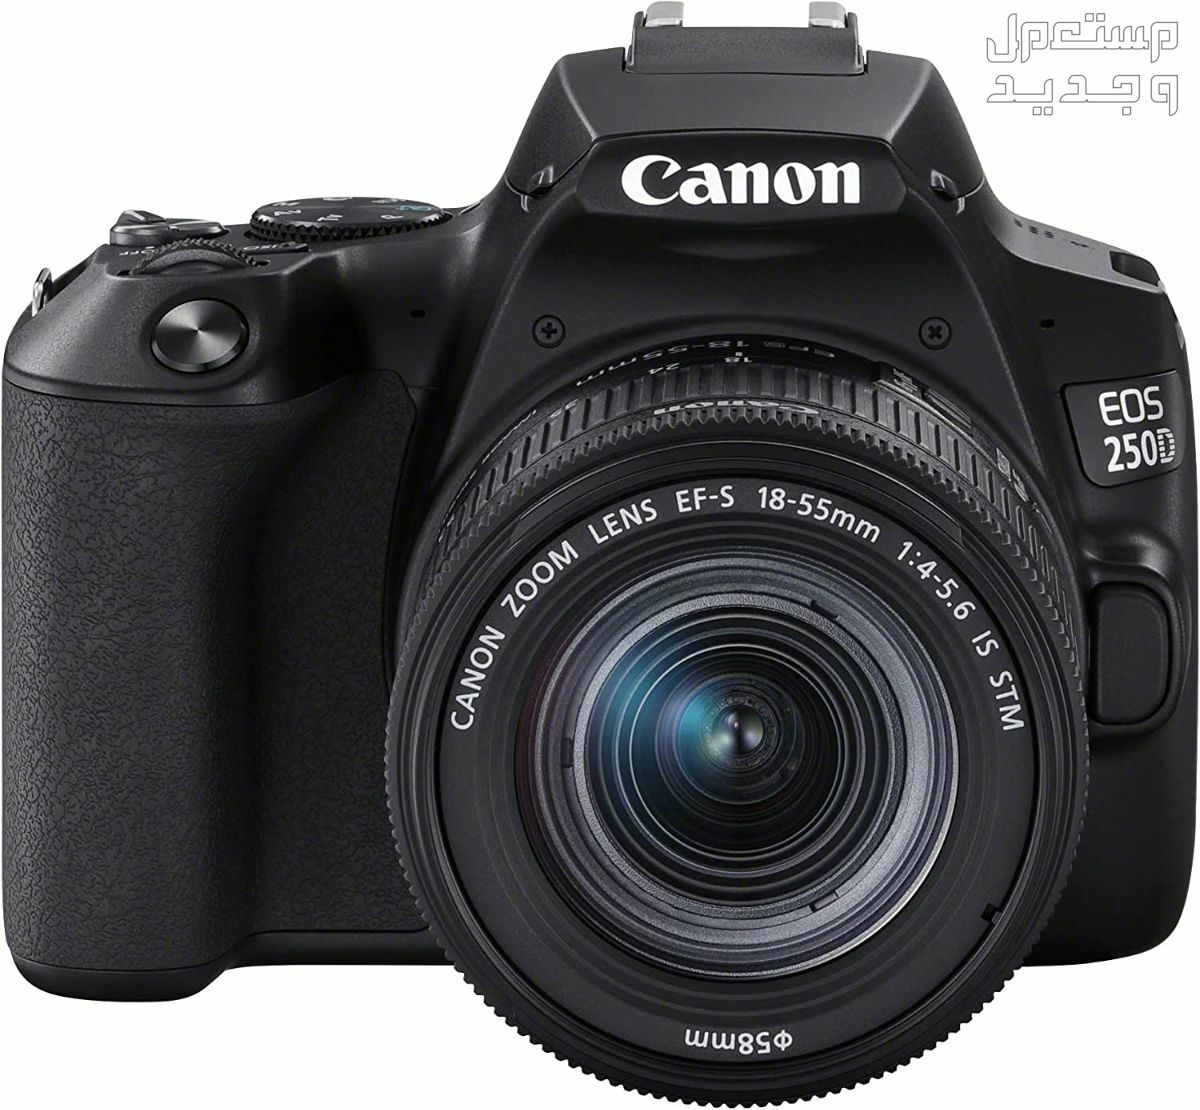 سعر ومميزات ومواصفات أرخص 5 كاميرات تصوير من كانون في العراق مميزات كاميرا Canon EOS 250D